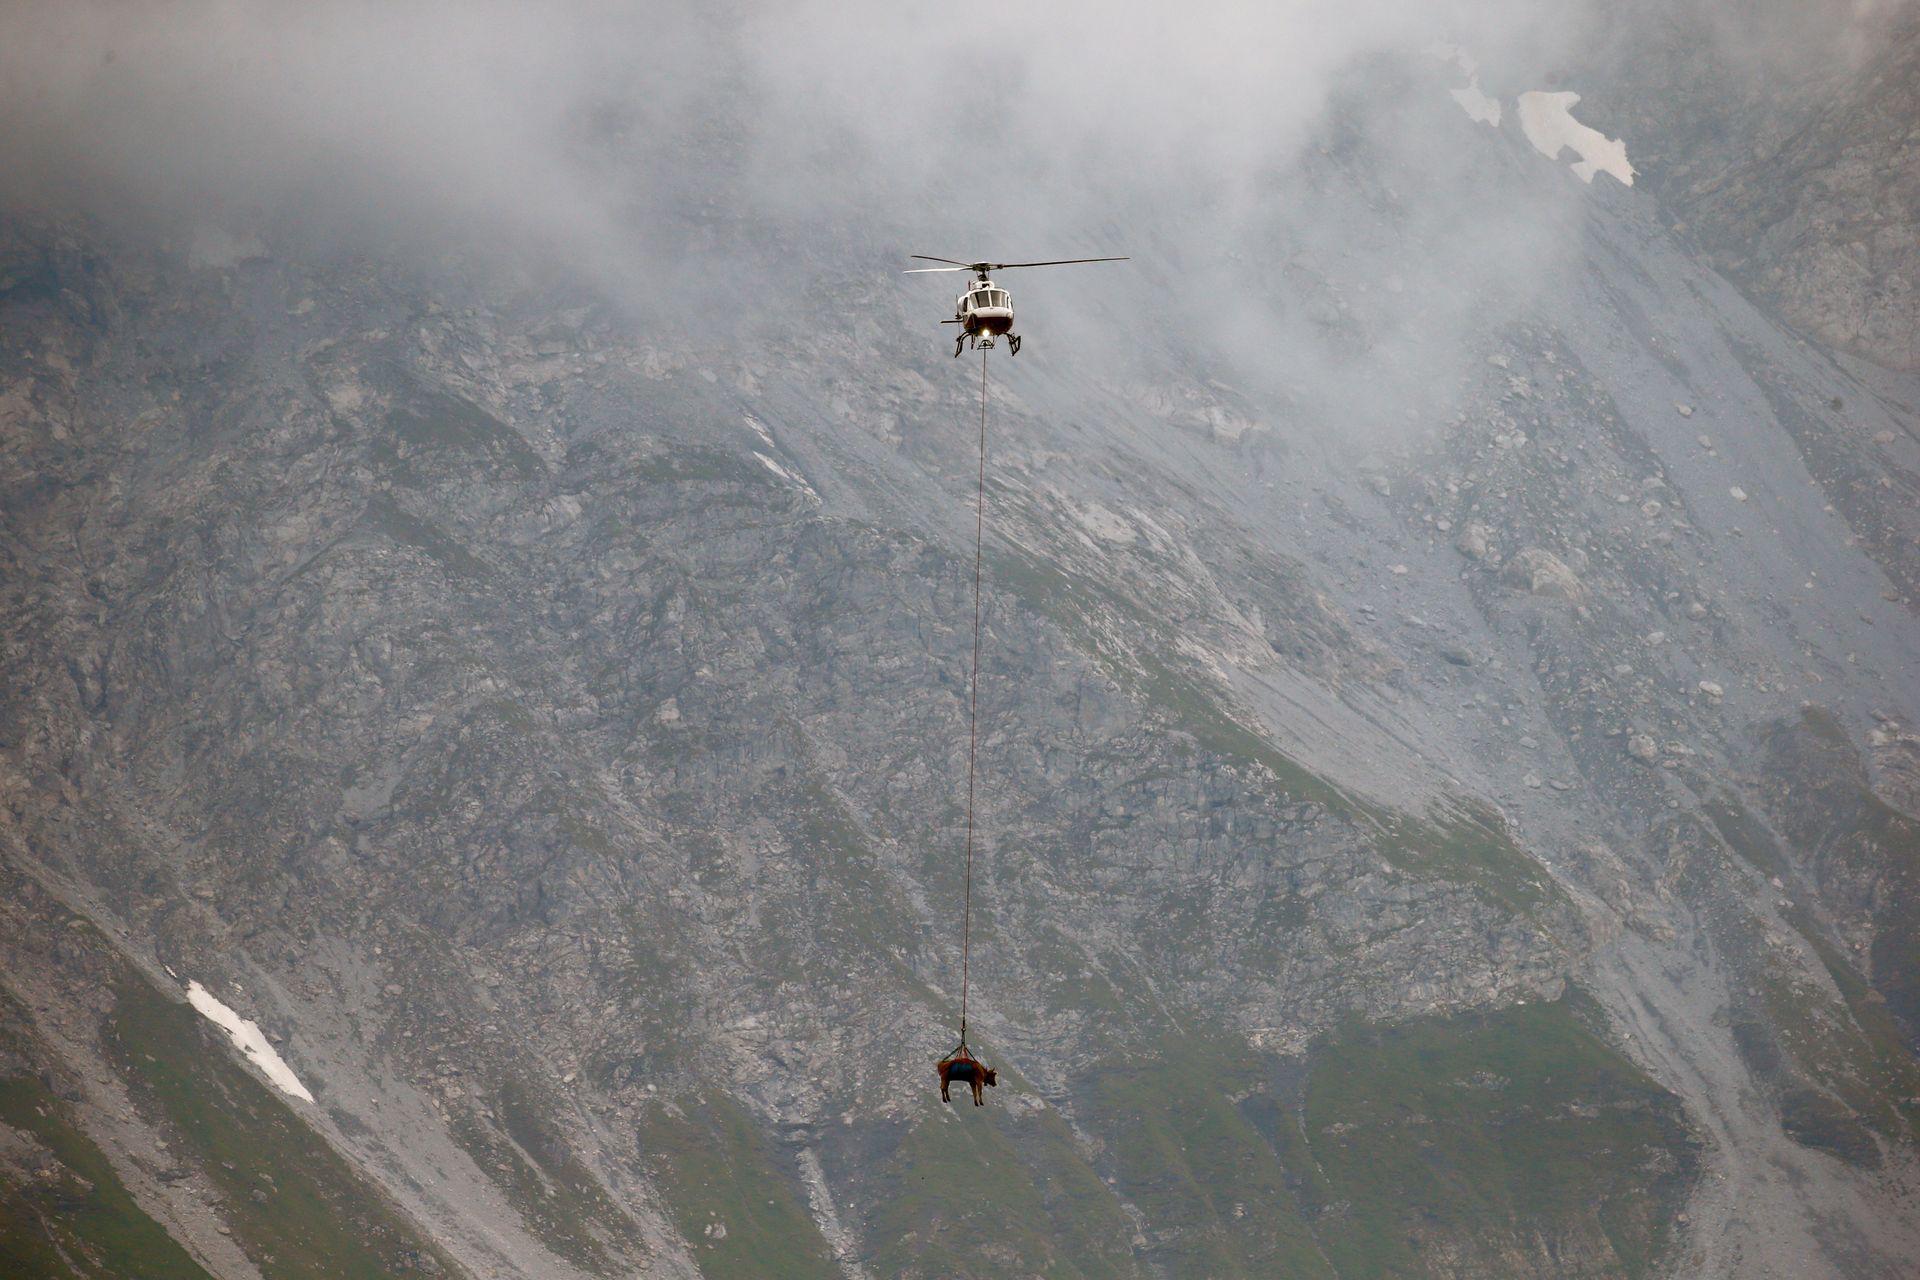 Et helikopter flyr gjennom et tåkete landskap, med en ku hengende under.